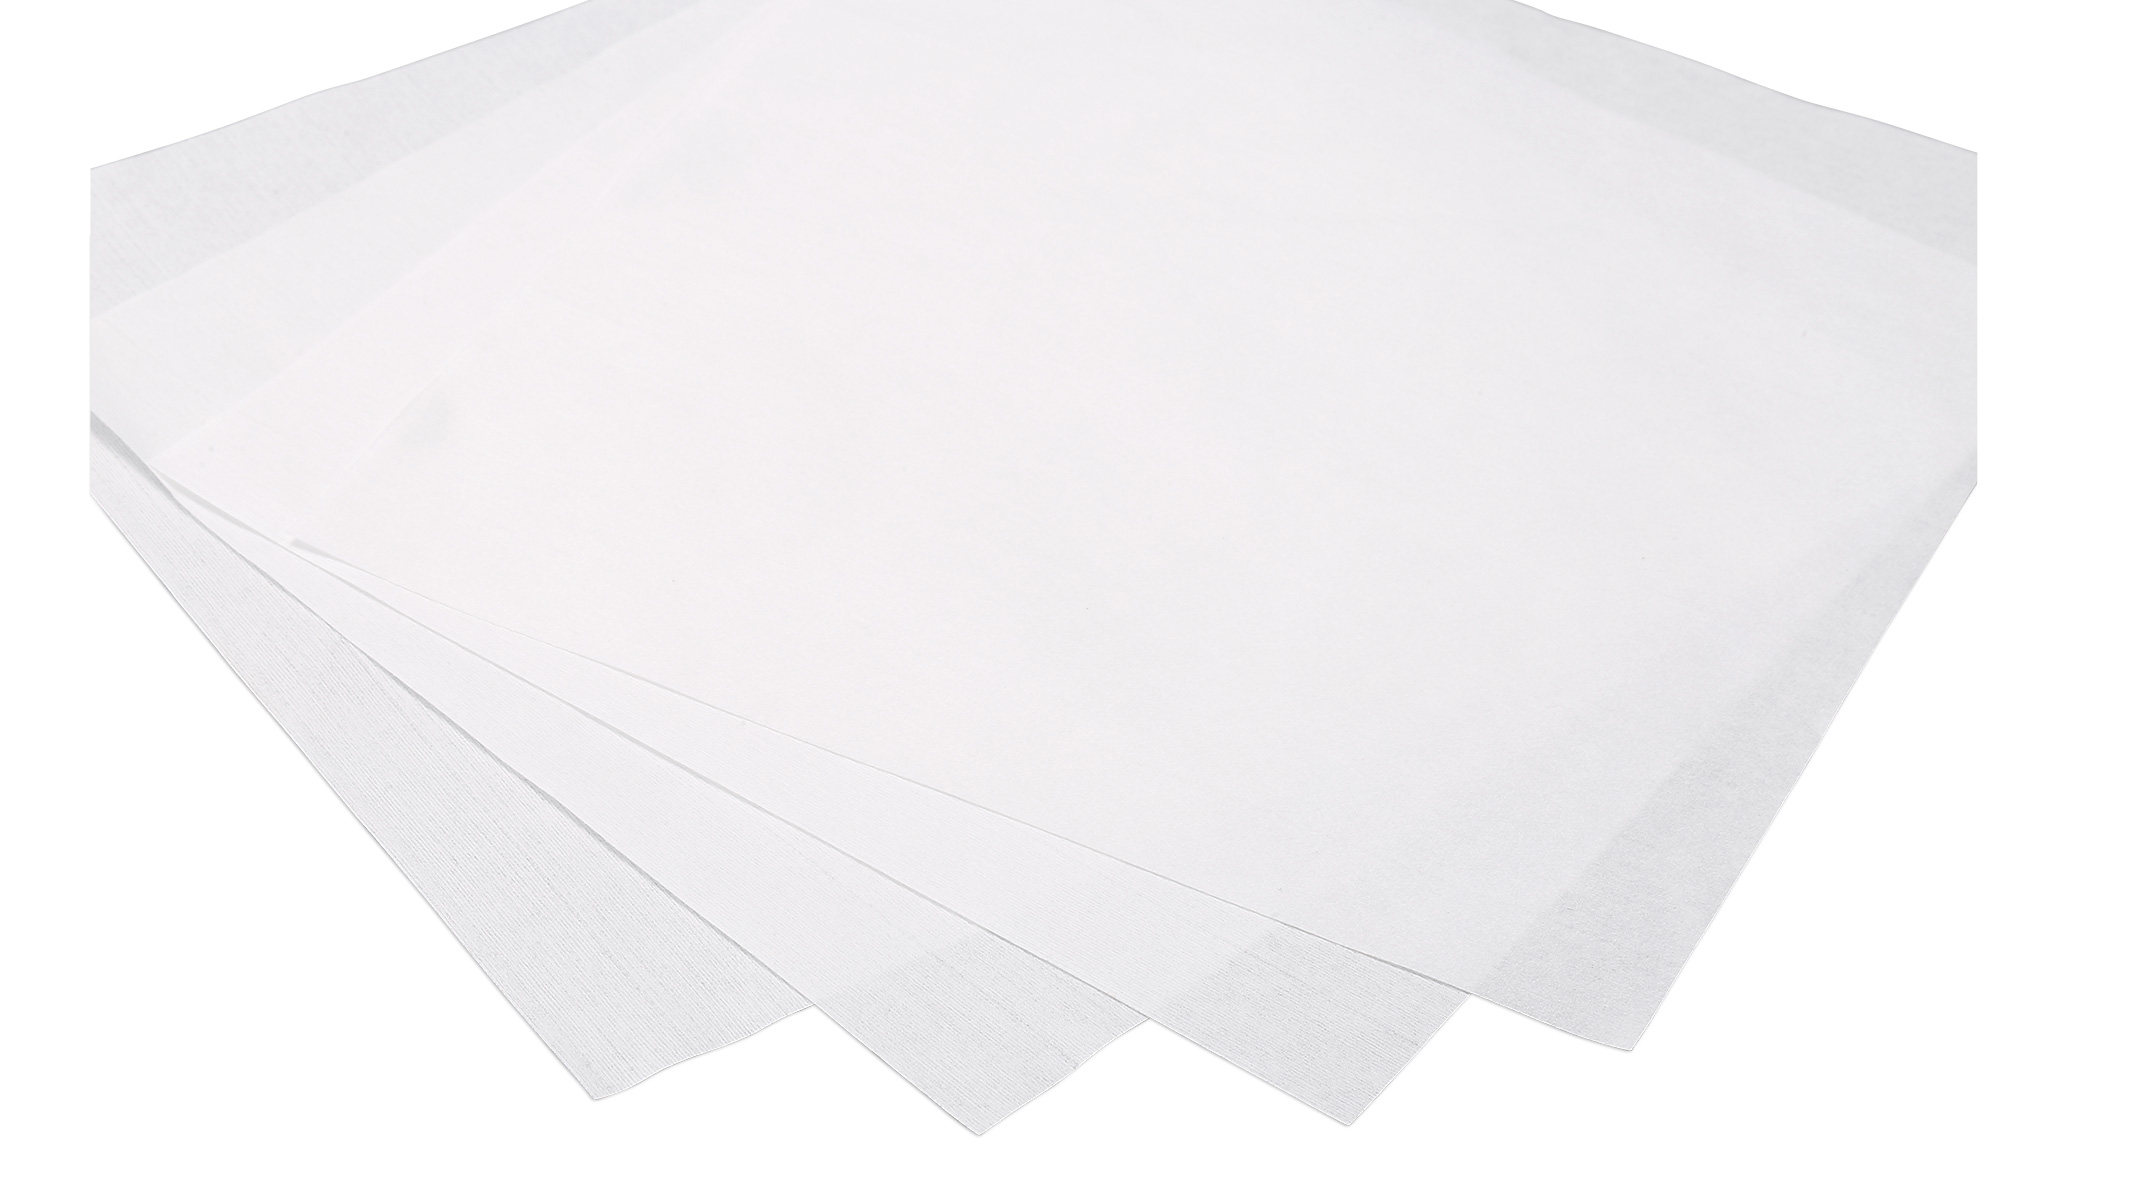 Cleanroom reinigingsdoekjes van cellulose-polyester vlies, 100 stuks